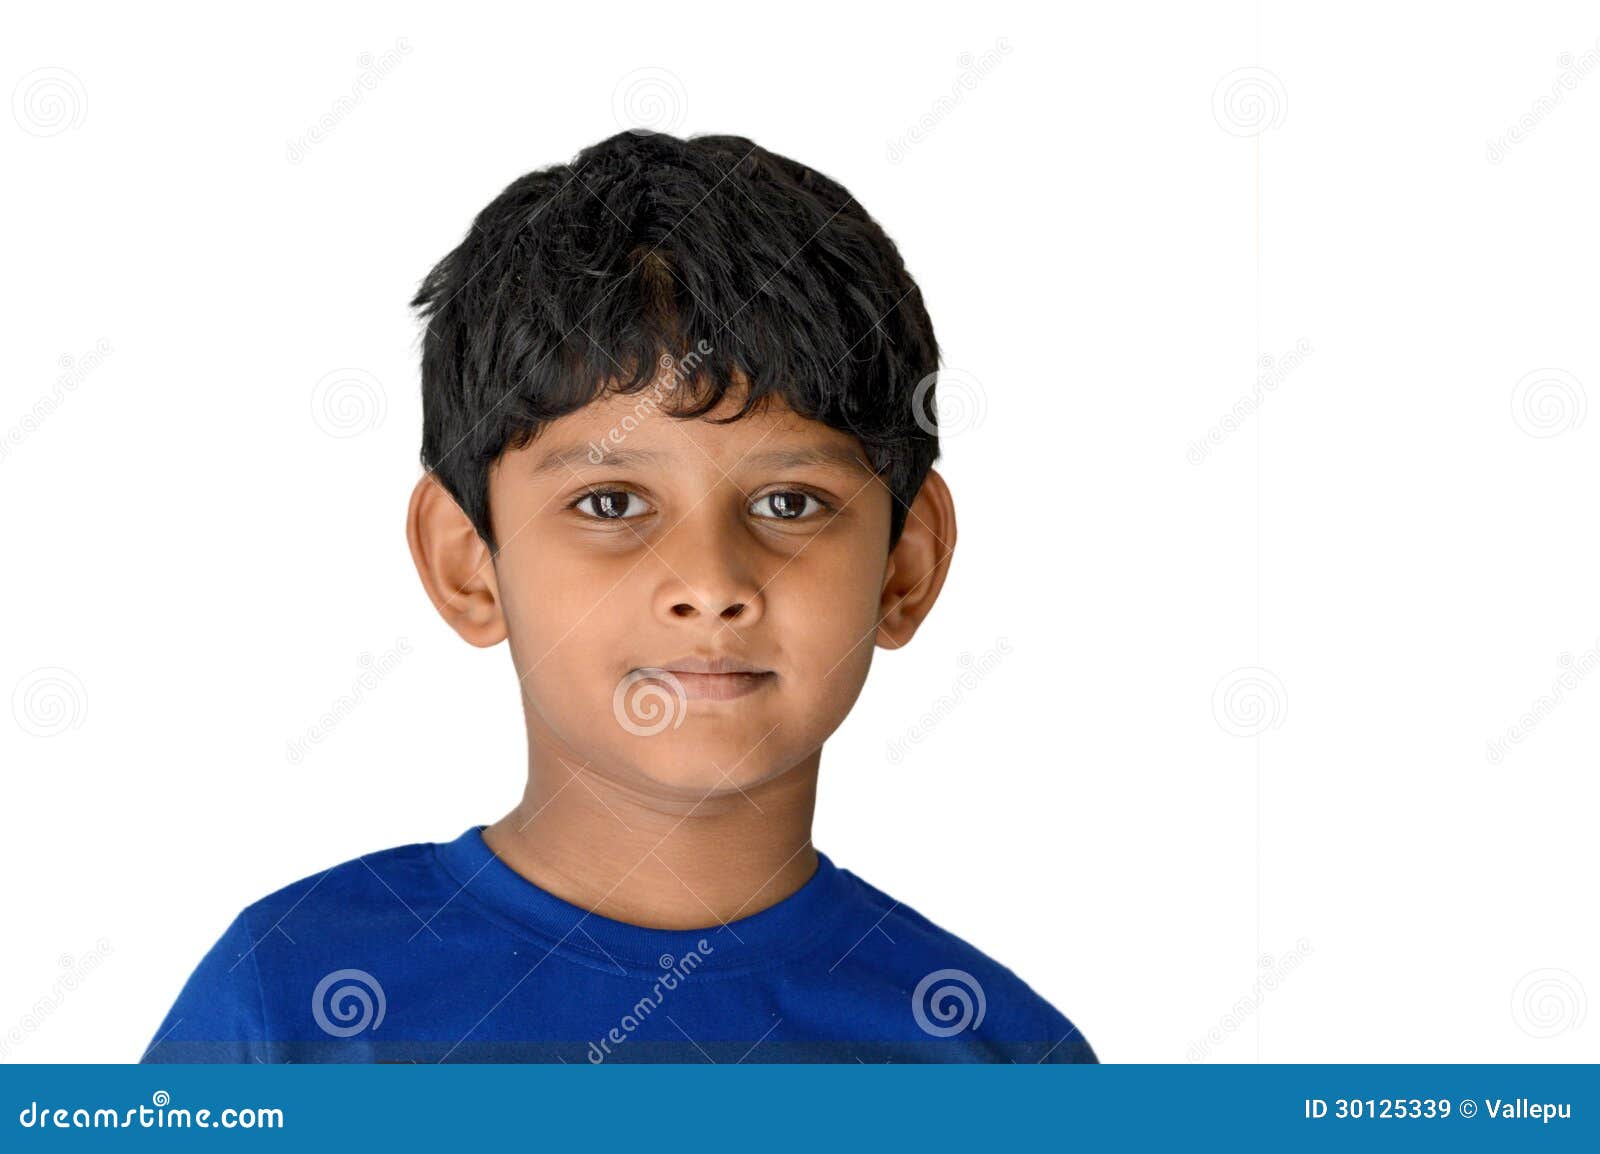 Free photo: Indian Boy - Boy, Bspo06, Green - Free Download - Jooinn